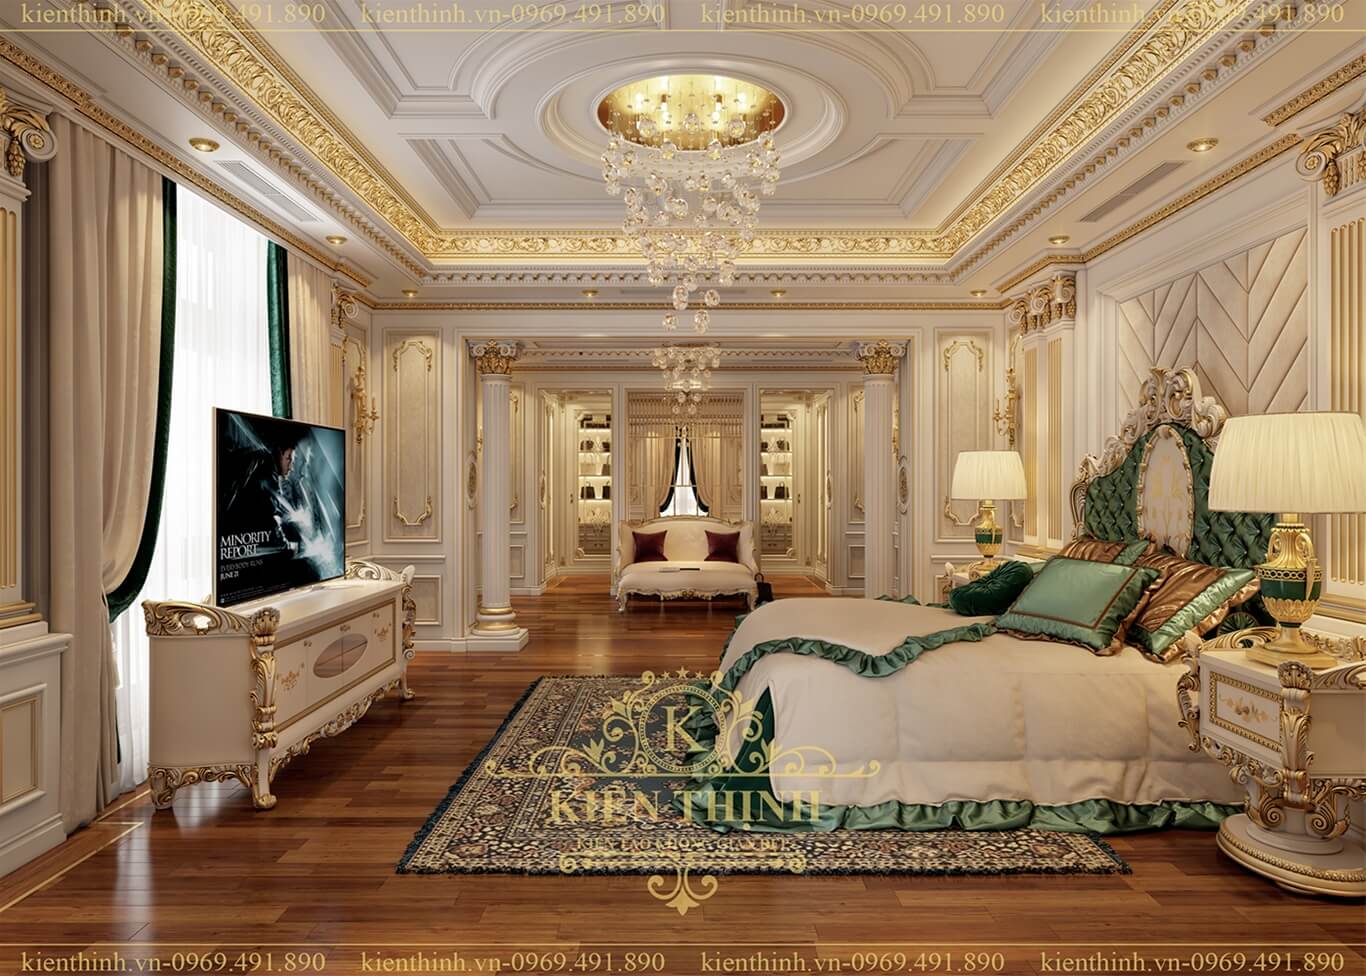 Mẫu thiết kế nội thất phòng ngủ Master lâu đài, biệt thự phong cách kiến trúc tân cổ điển châu Âu 4 tầng mang âm hưởng quý tộc đẳng cấp BT1983